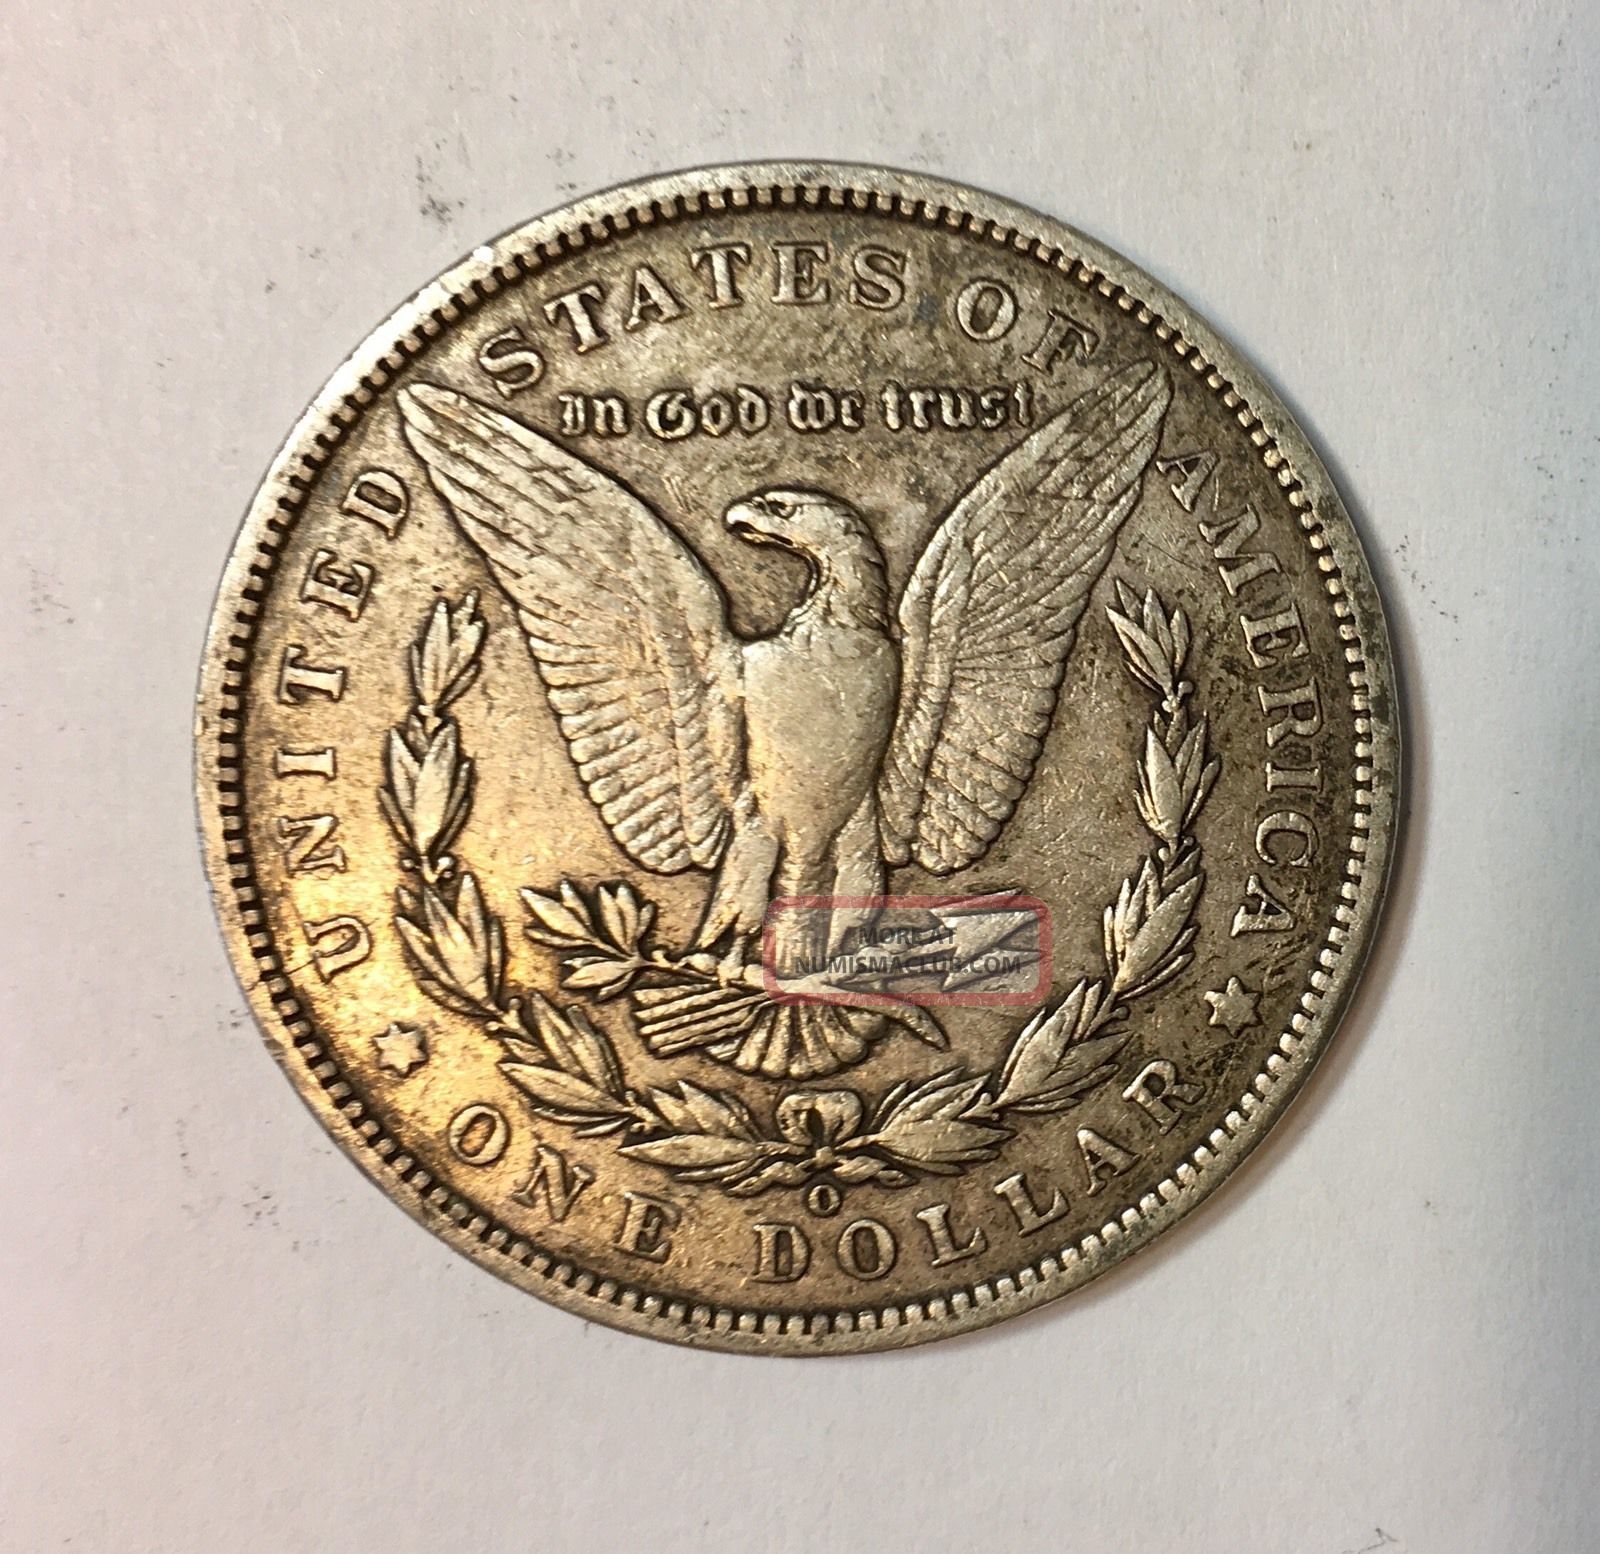 1901 O Morgan Silver Dollar $1 Coin Circulated